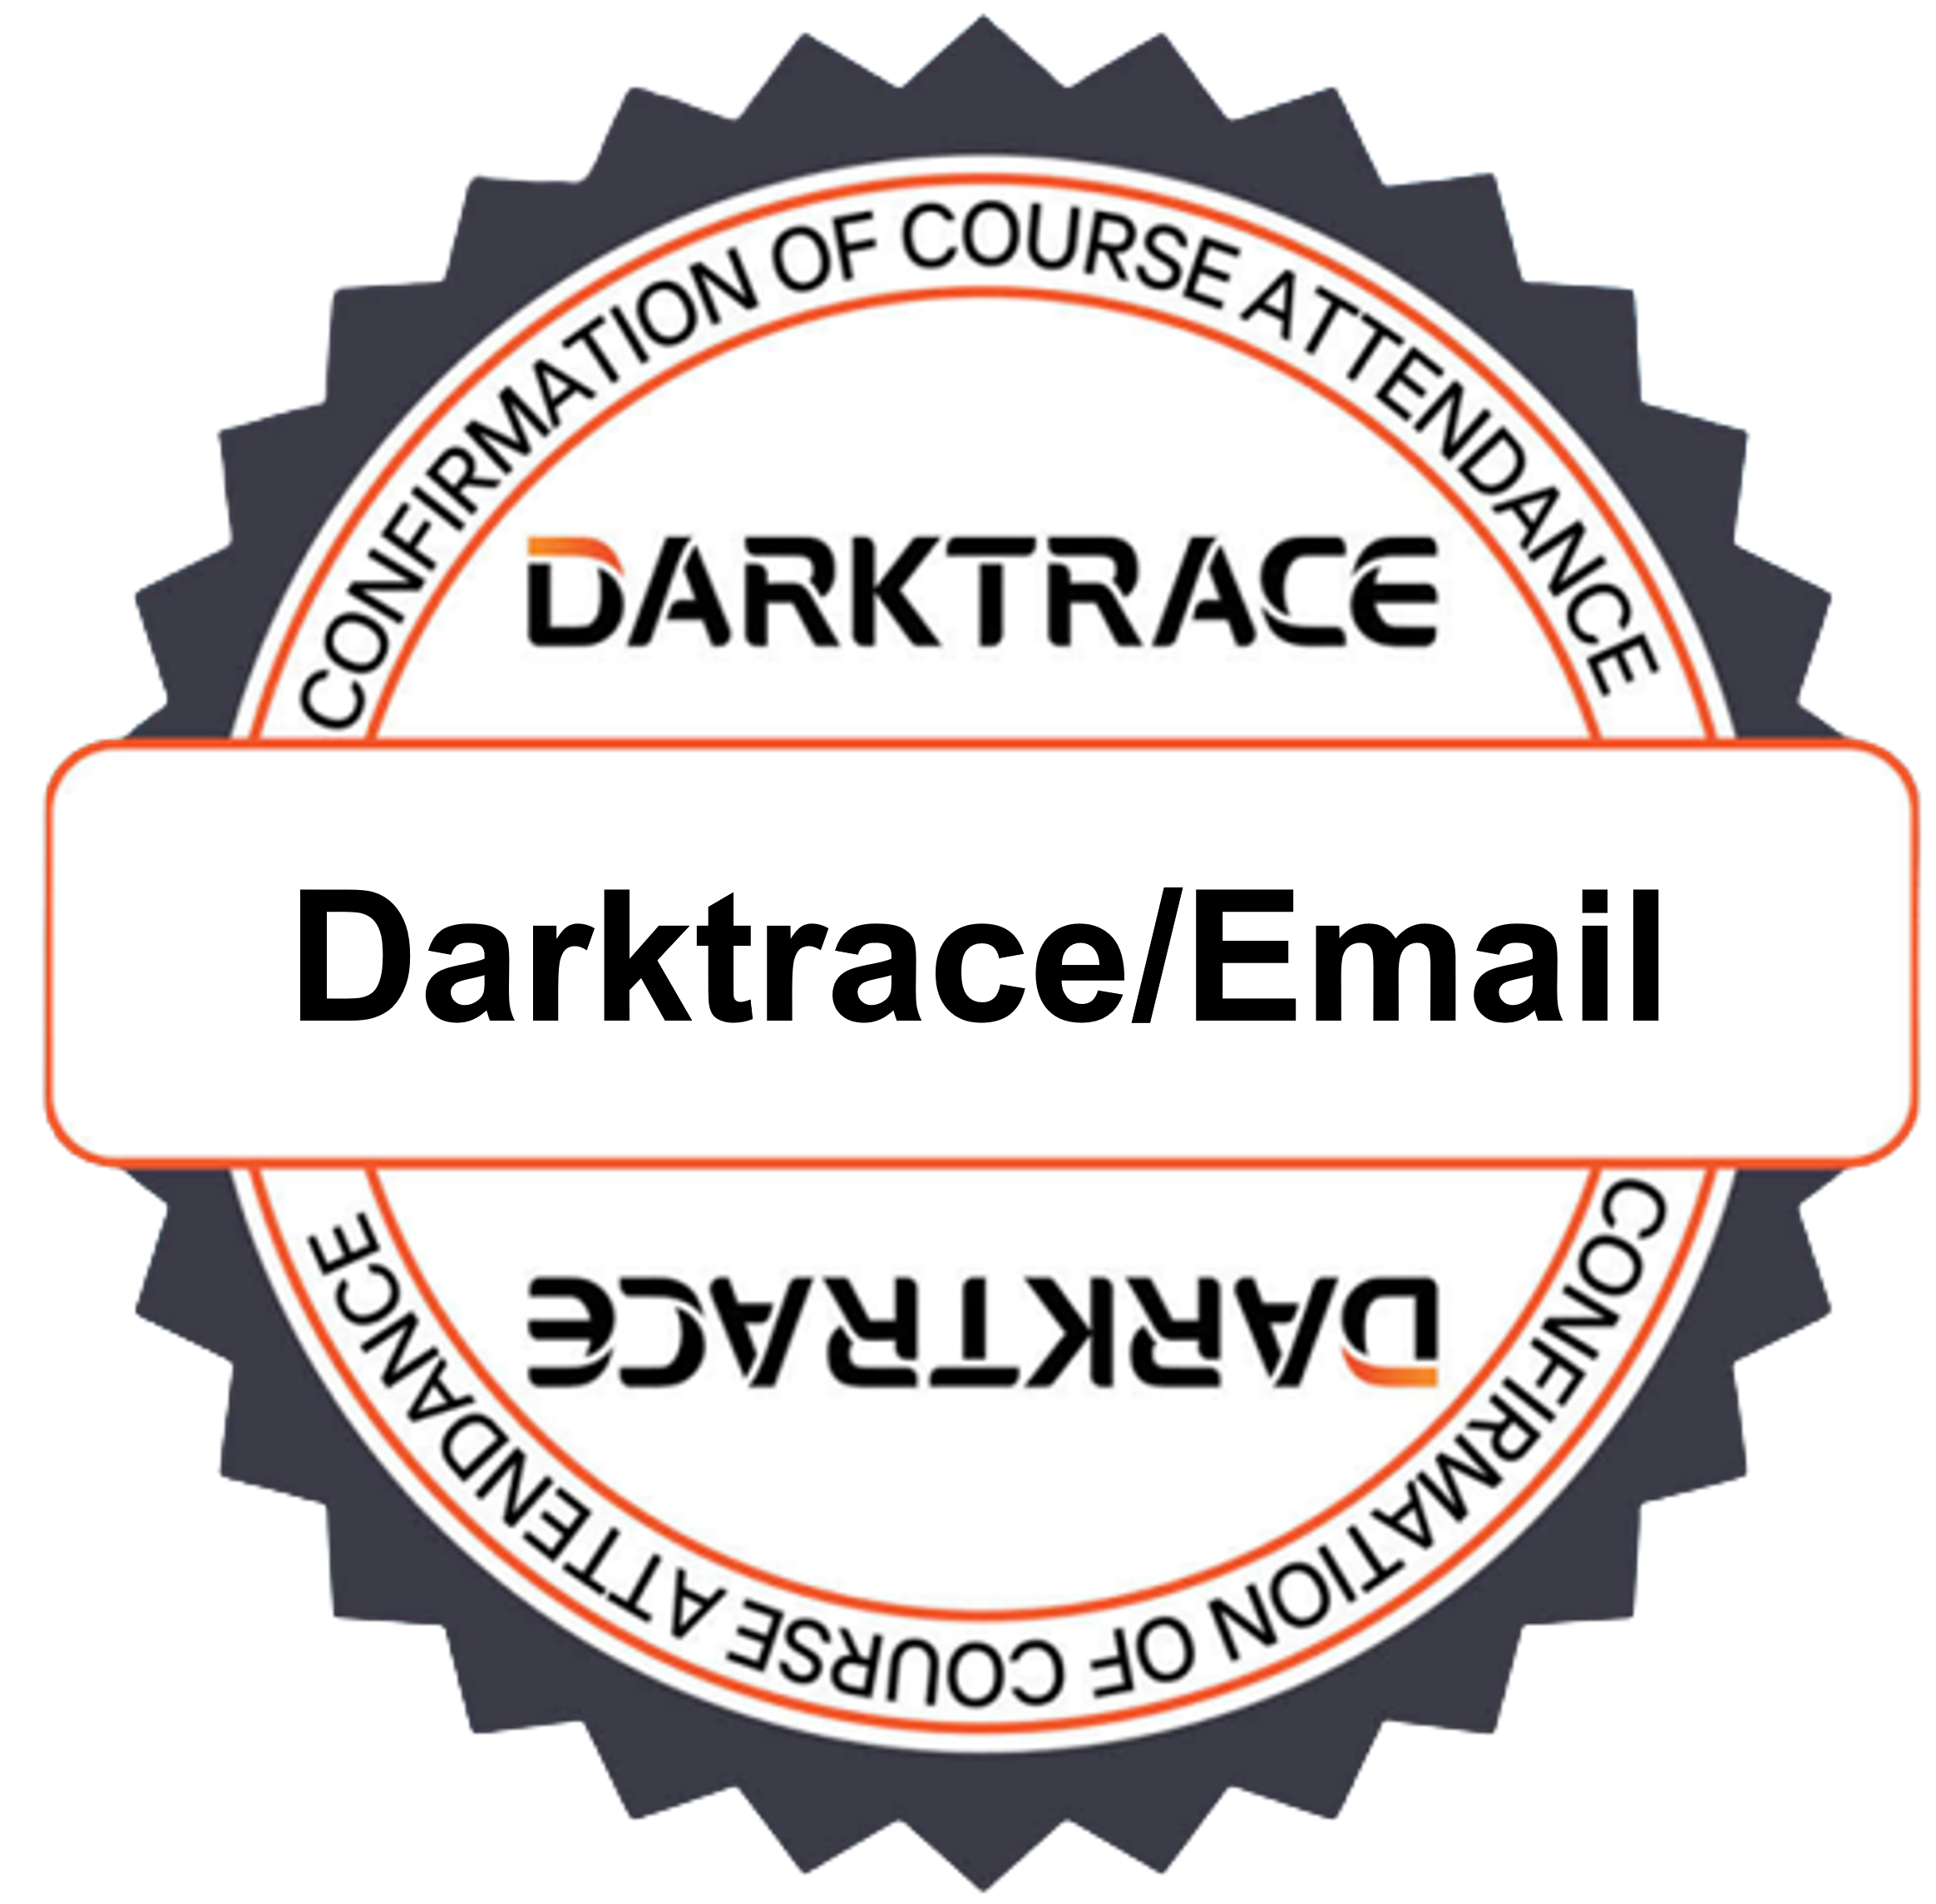 Darktrace/E-Mail course attendance